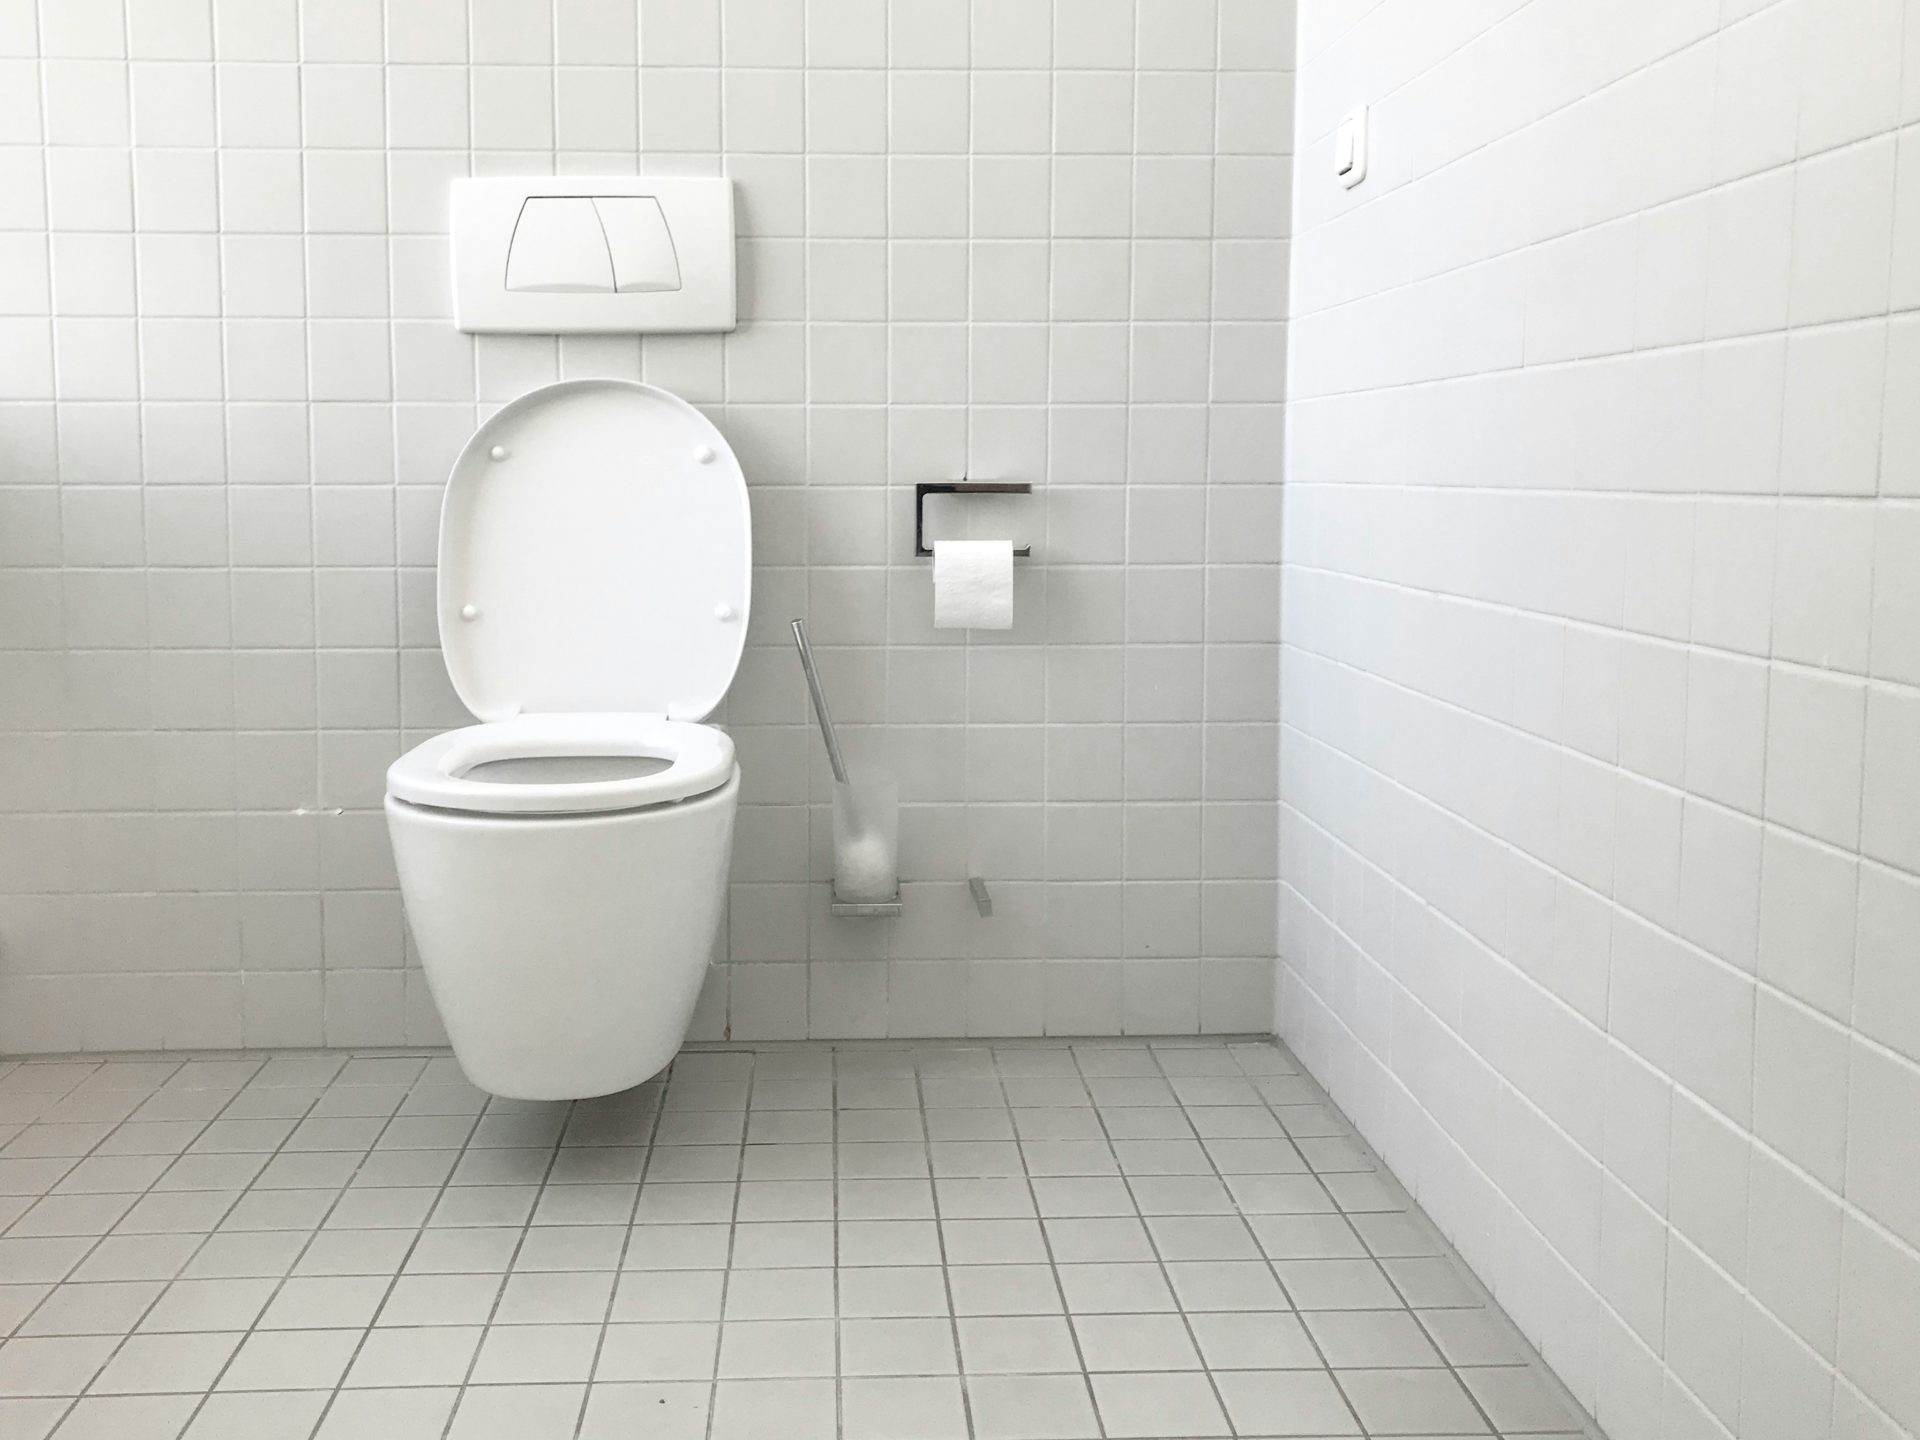 Scaricare il wc con la tavoletta alzata o abbassata: ecco cosa dice la scienza